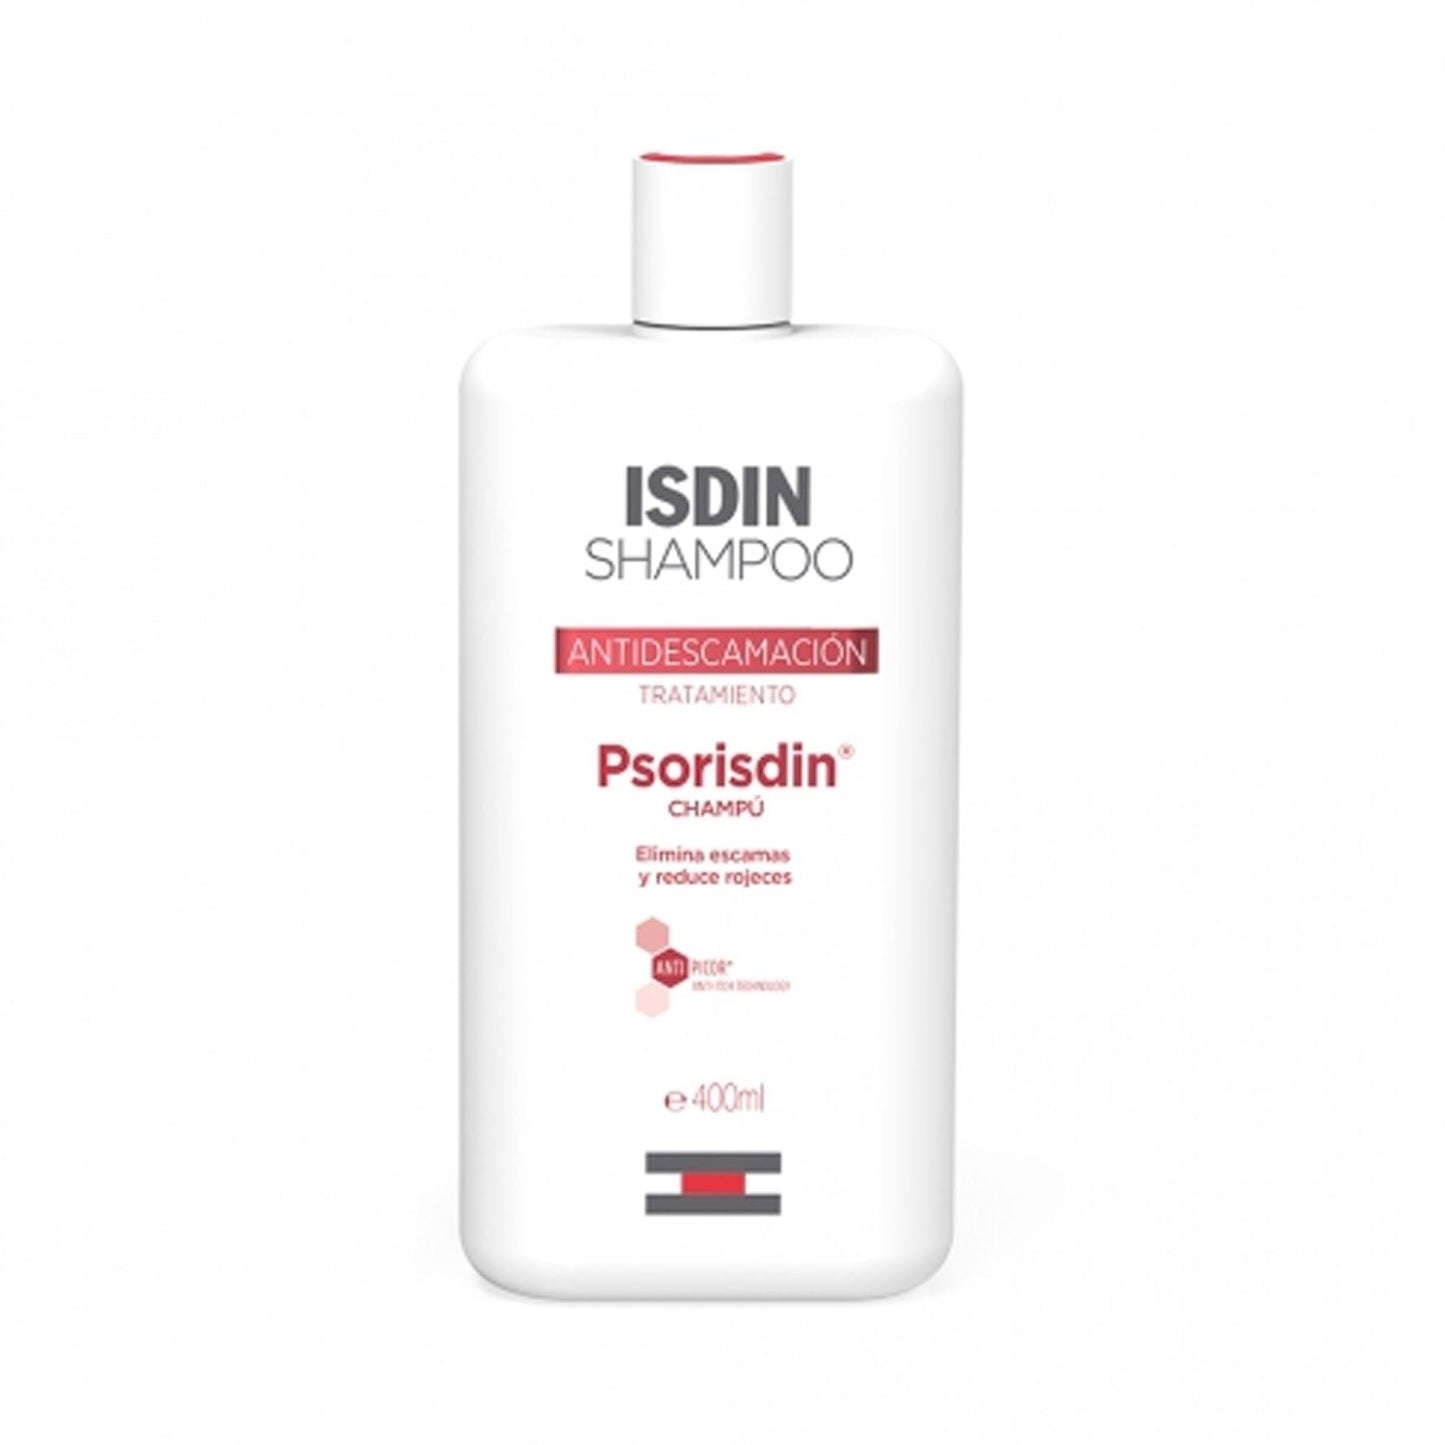 Buy Isdin Shampoo Psorisdin Online South Africa Galleon Online Pharmacy JHB